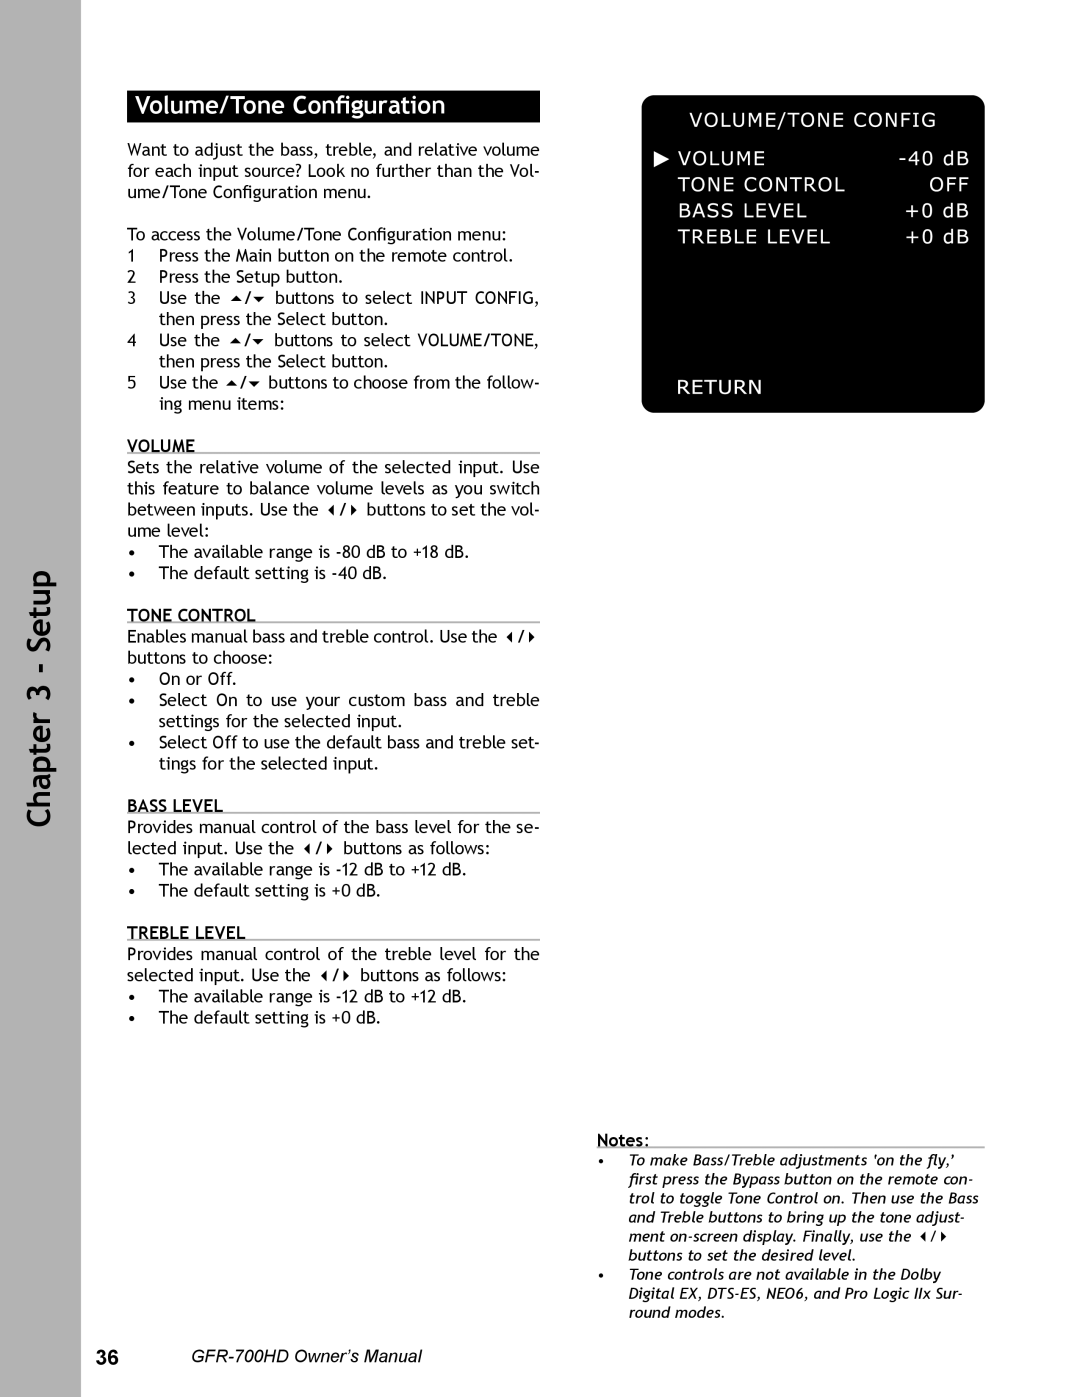 Adcom GFR-700HD user manual Volume/Tone Conﬁguration, Tone Control, Bass Level, Treble Level, Setup 